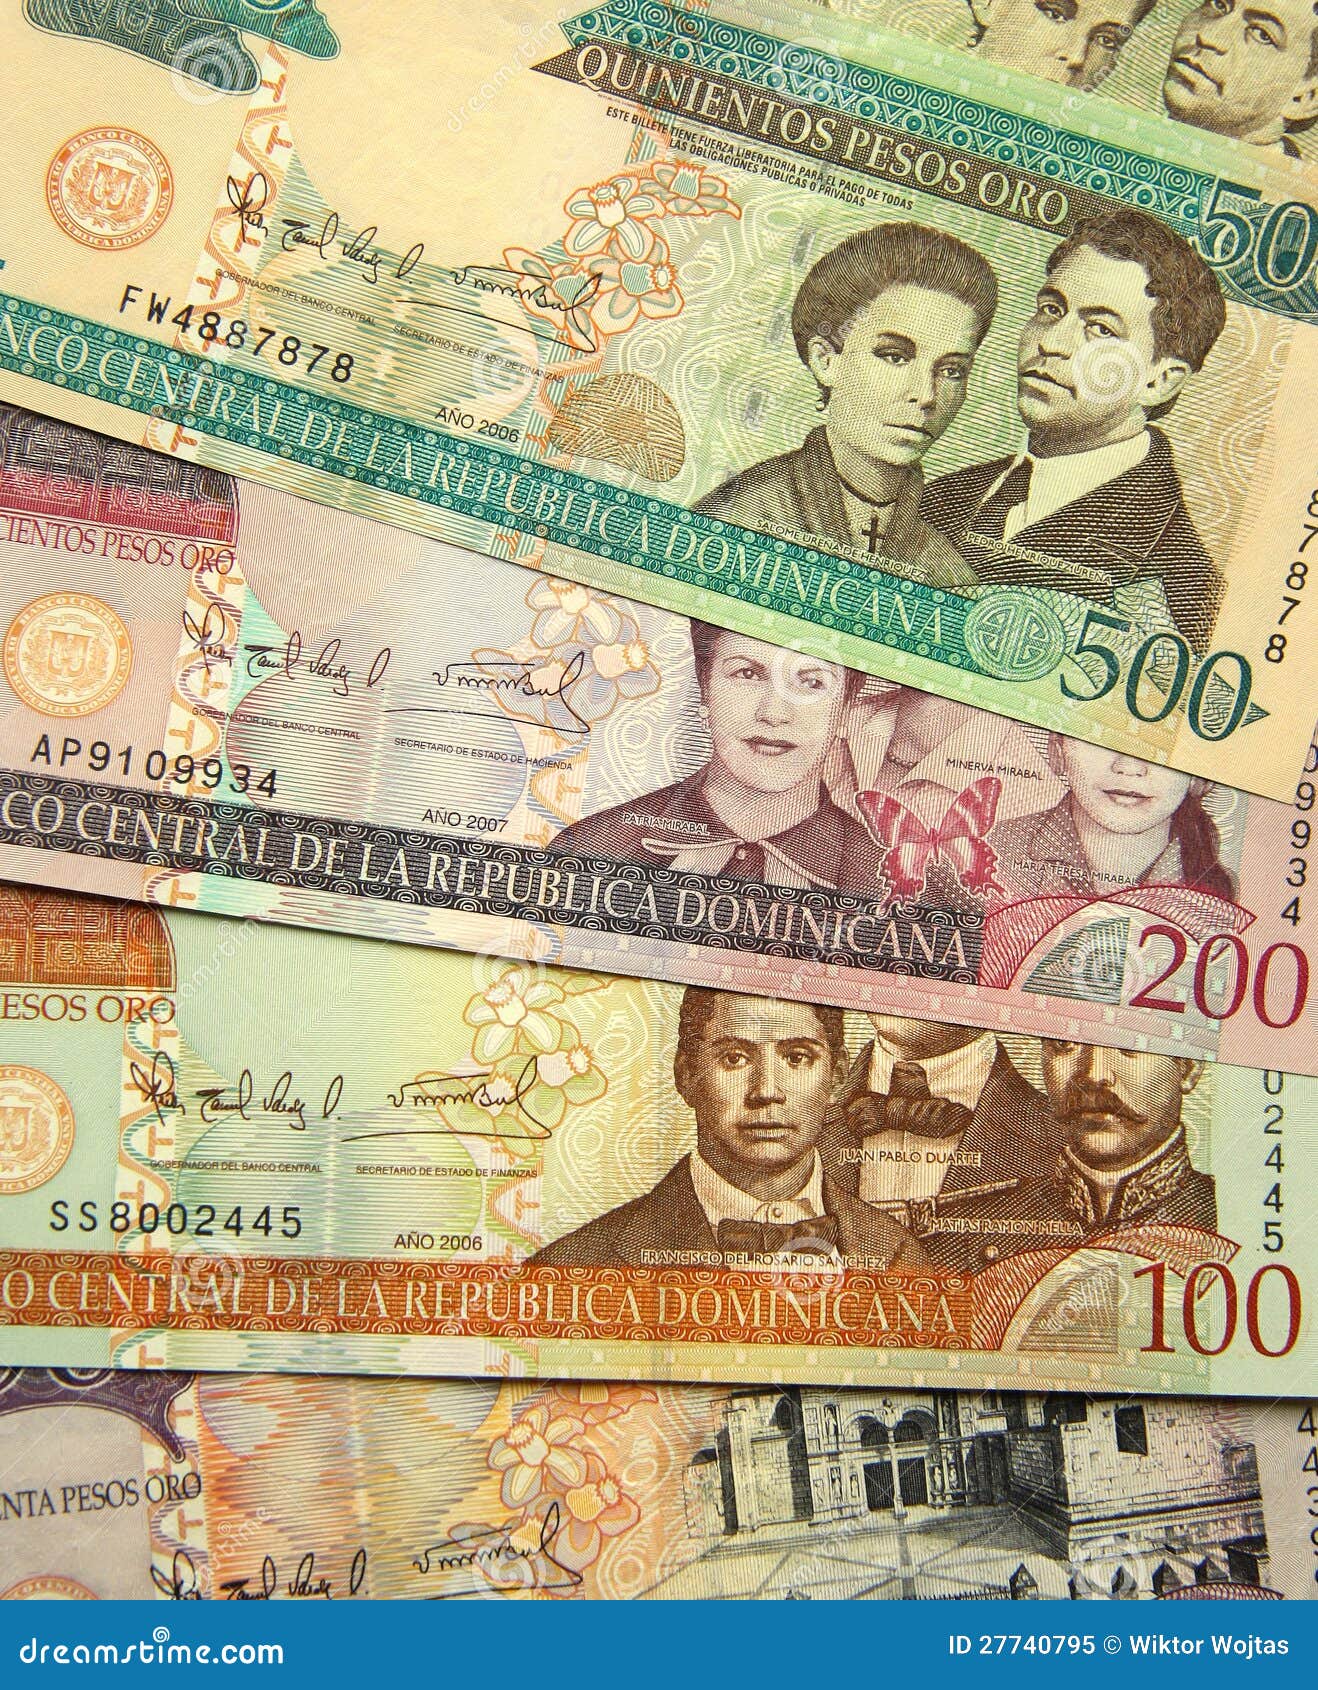 Валюта Доминиканы. Валюта Республики Доминикана. Песо валюта Доминикана. Валюта Доминиканской Республики фото.